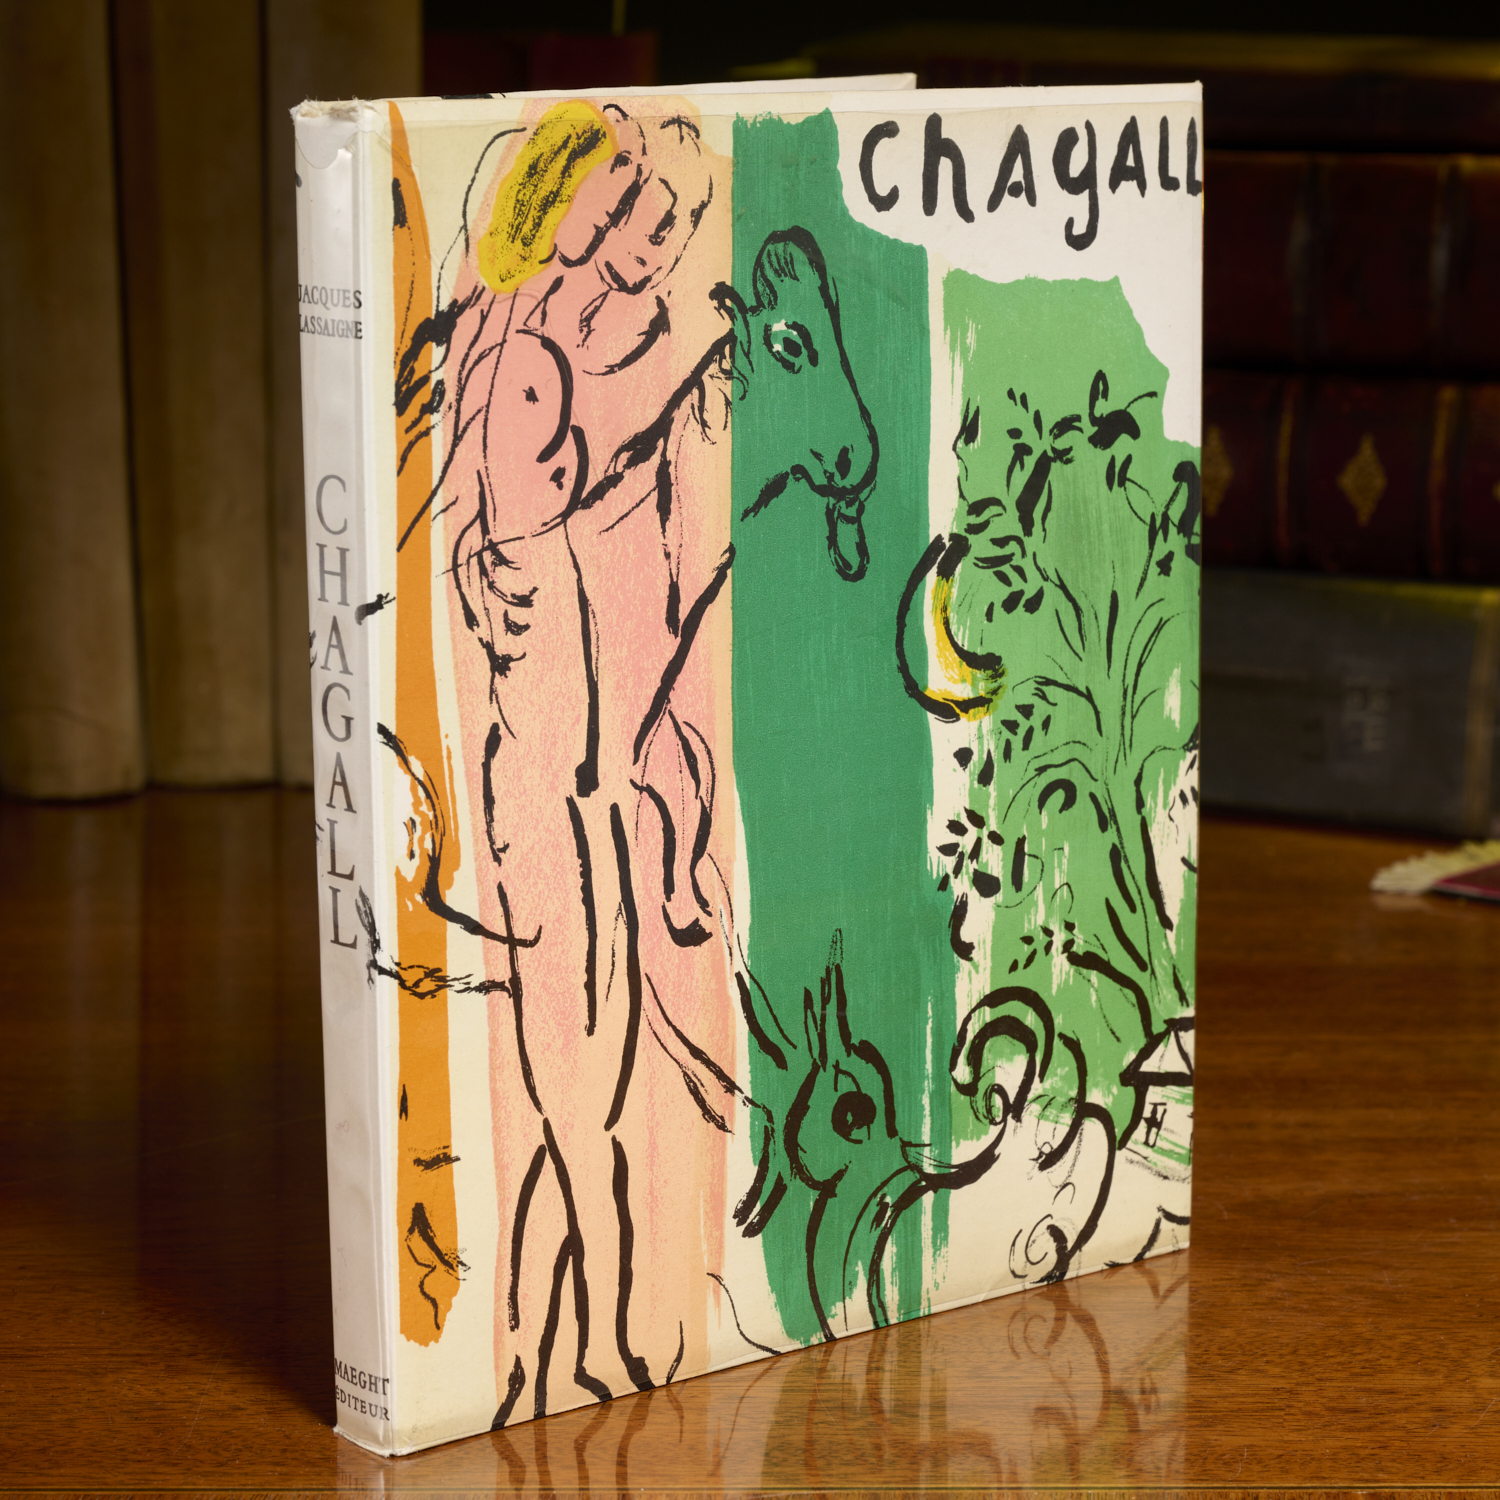 JACQUES LASSAIGNE, CHAGALL, 1957,